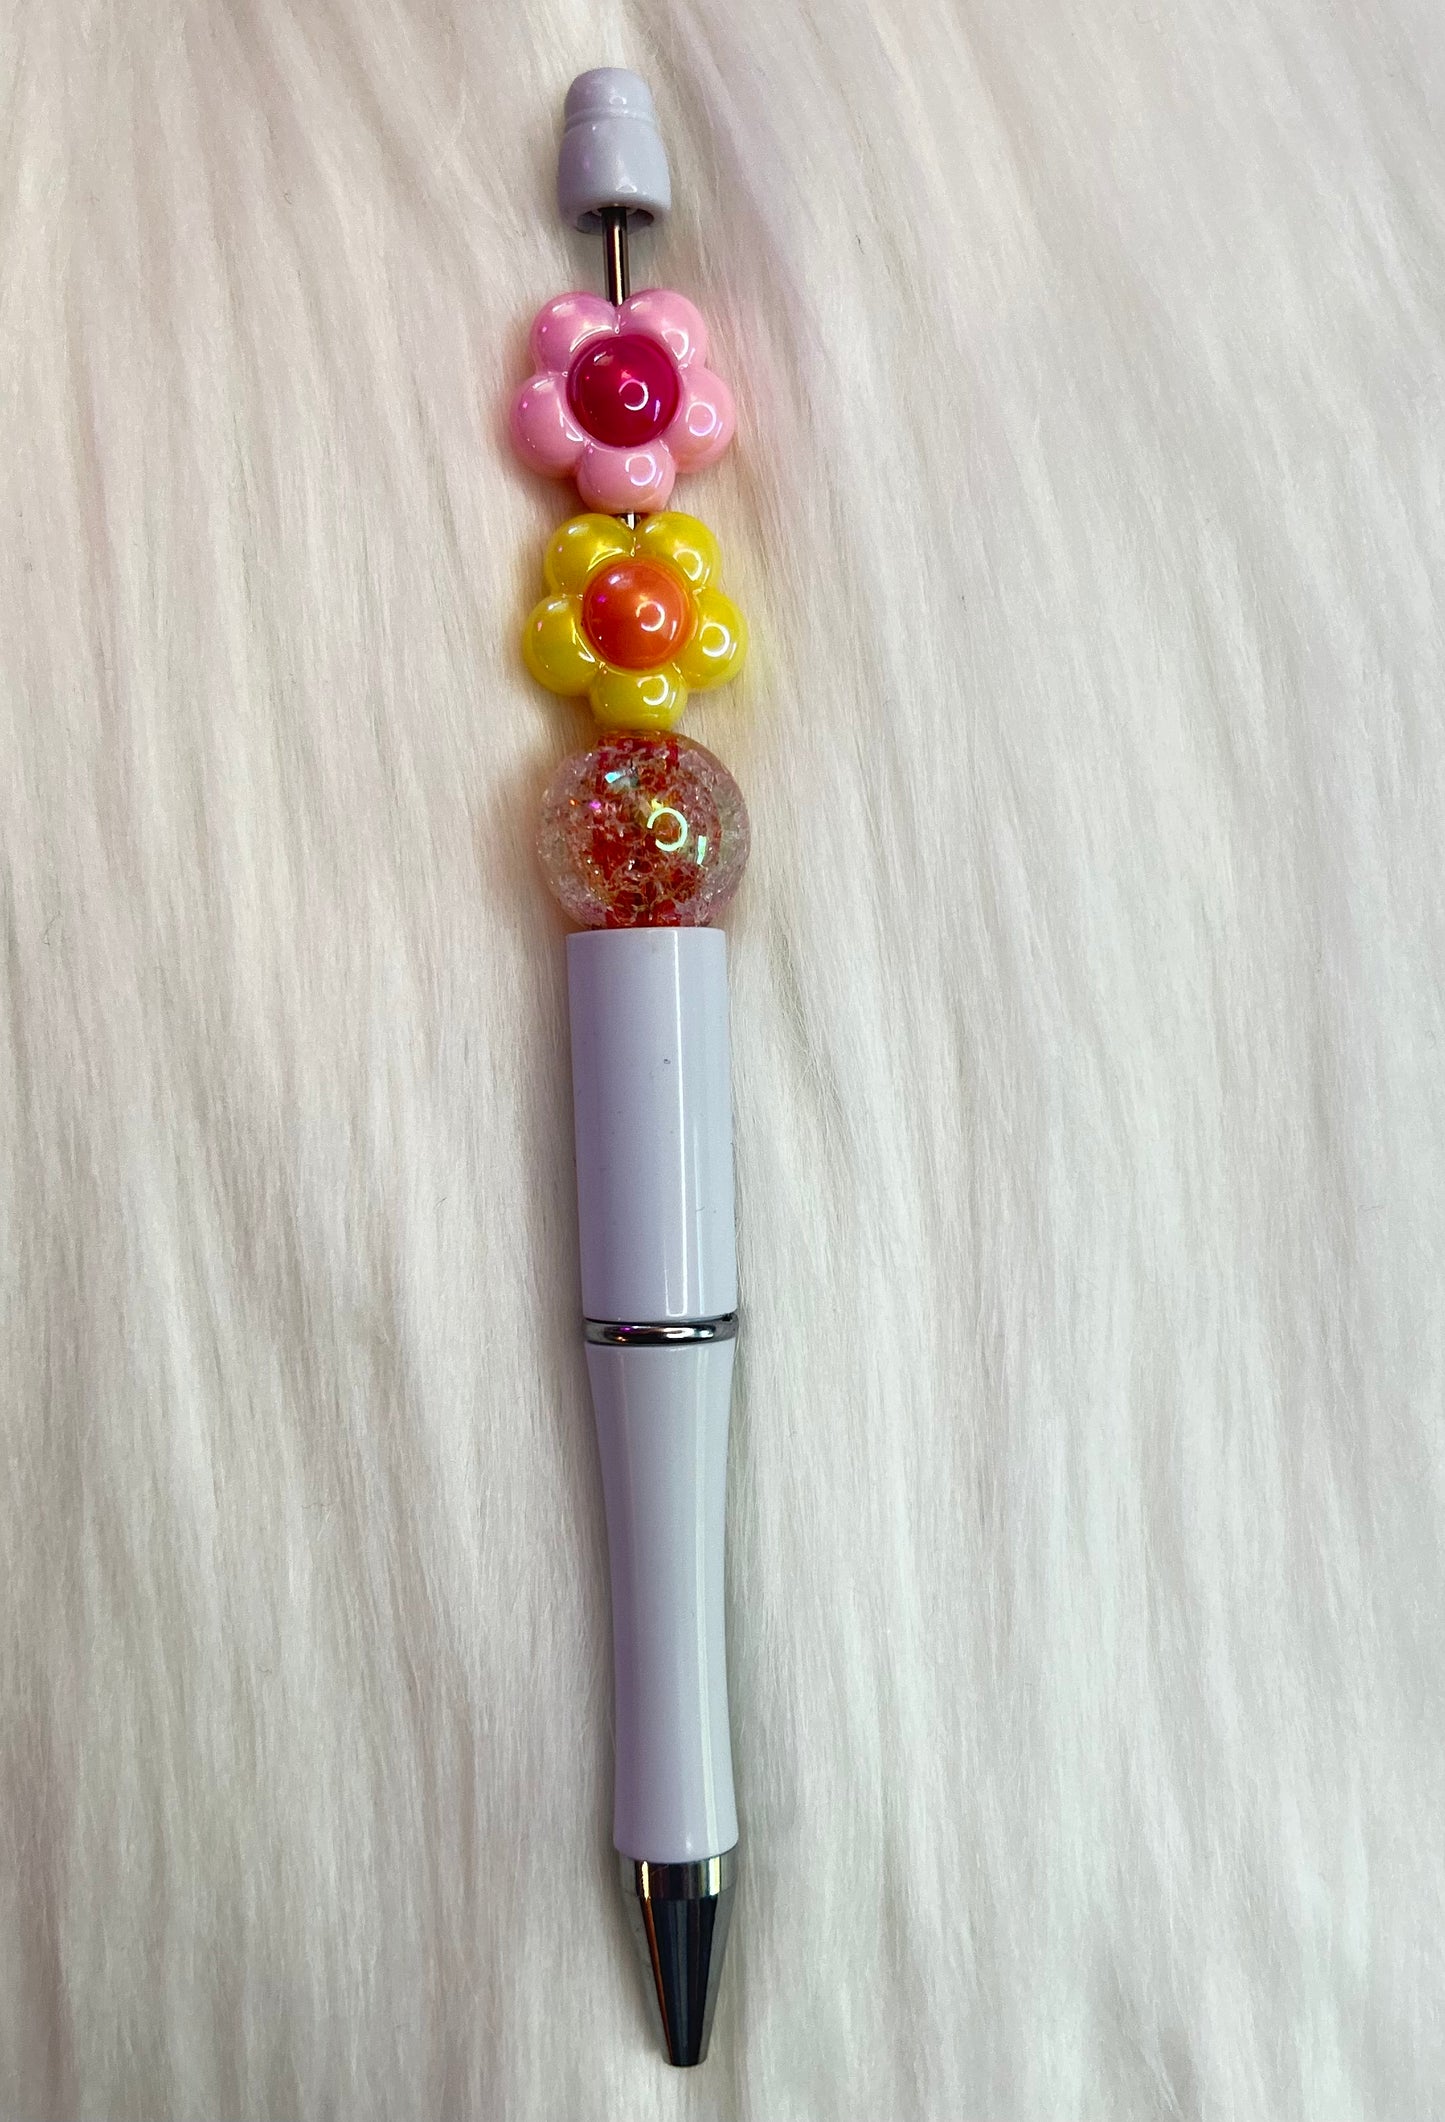 Acrylic Flower/Daisy Spacer Beads